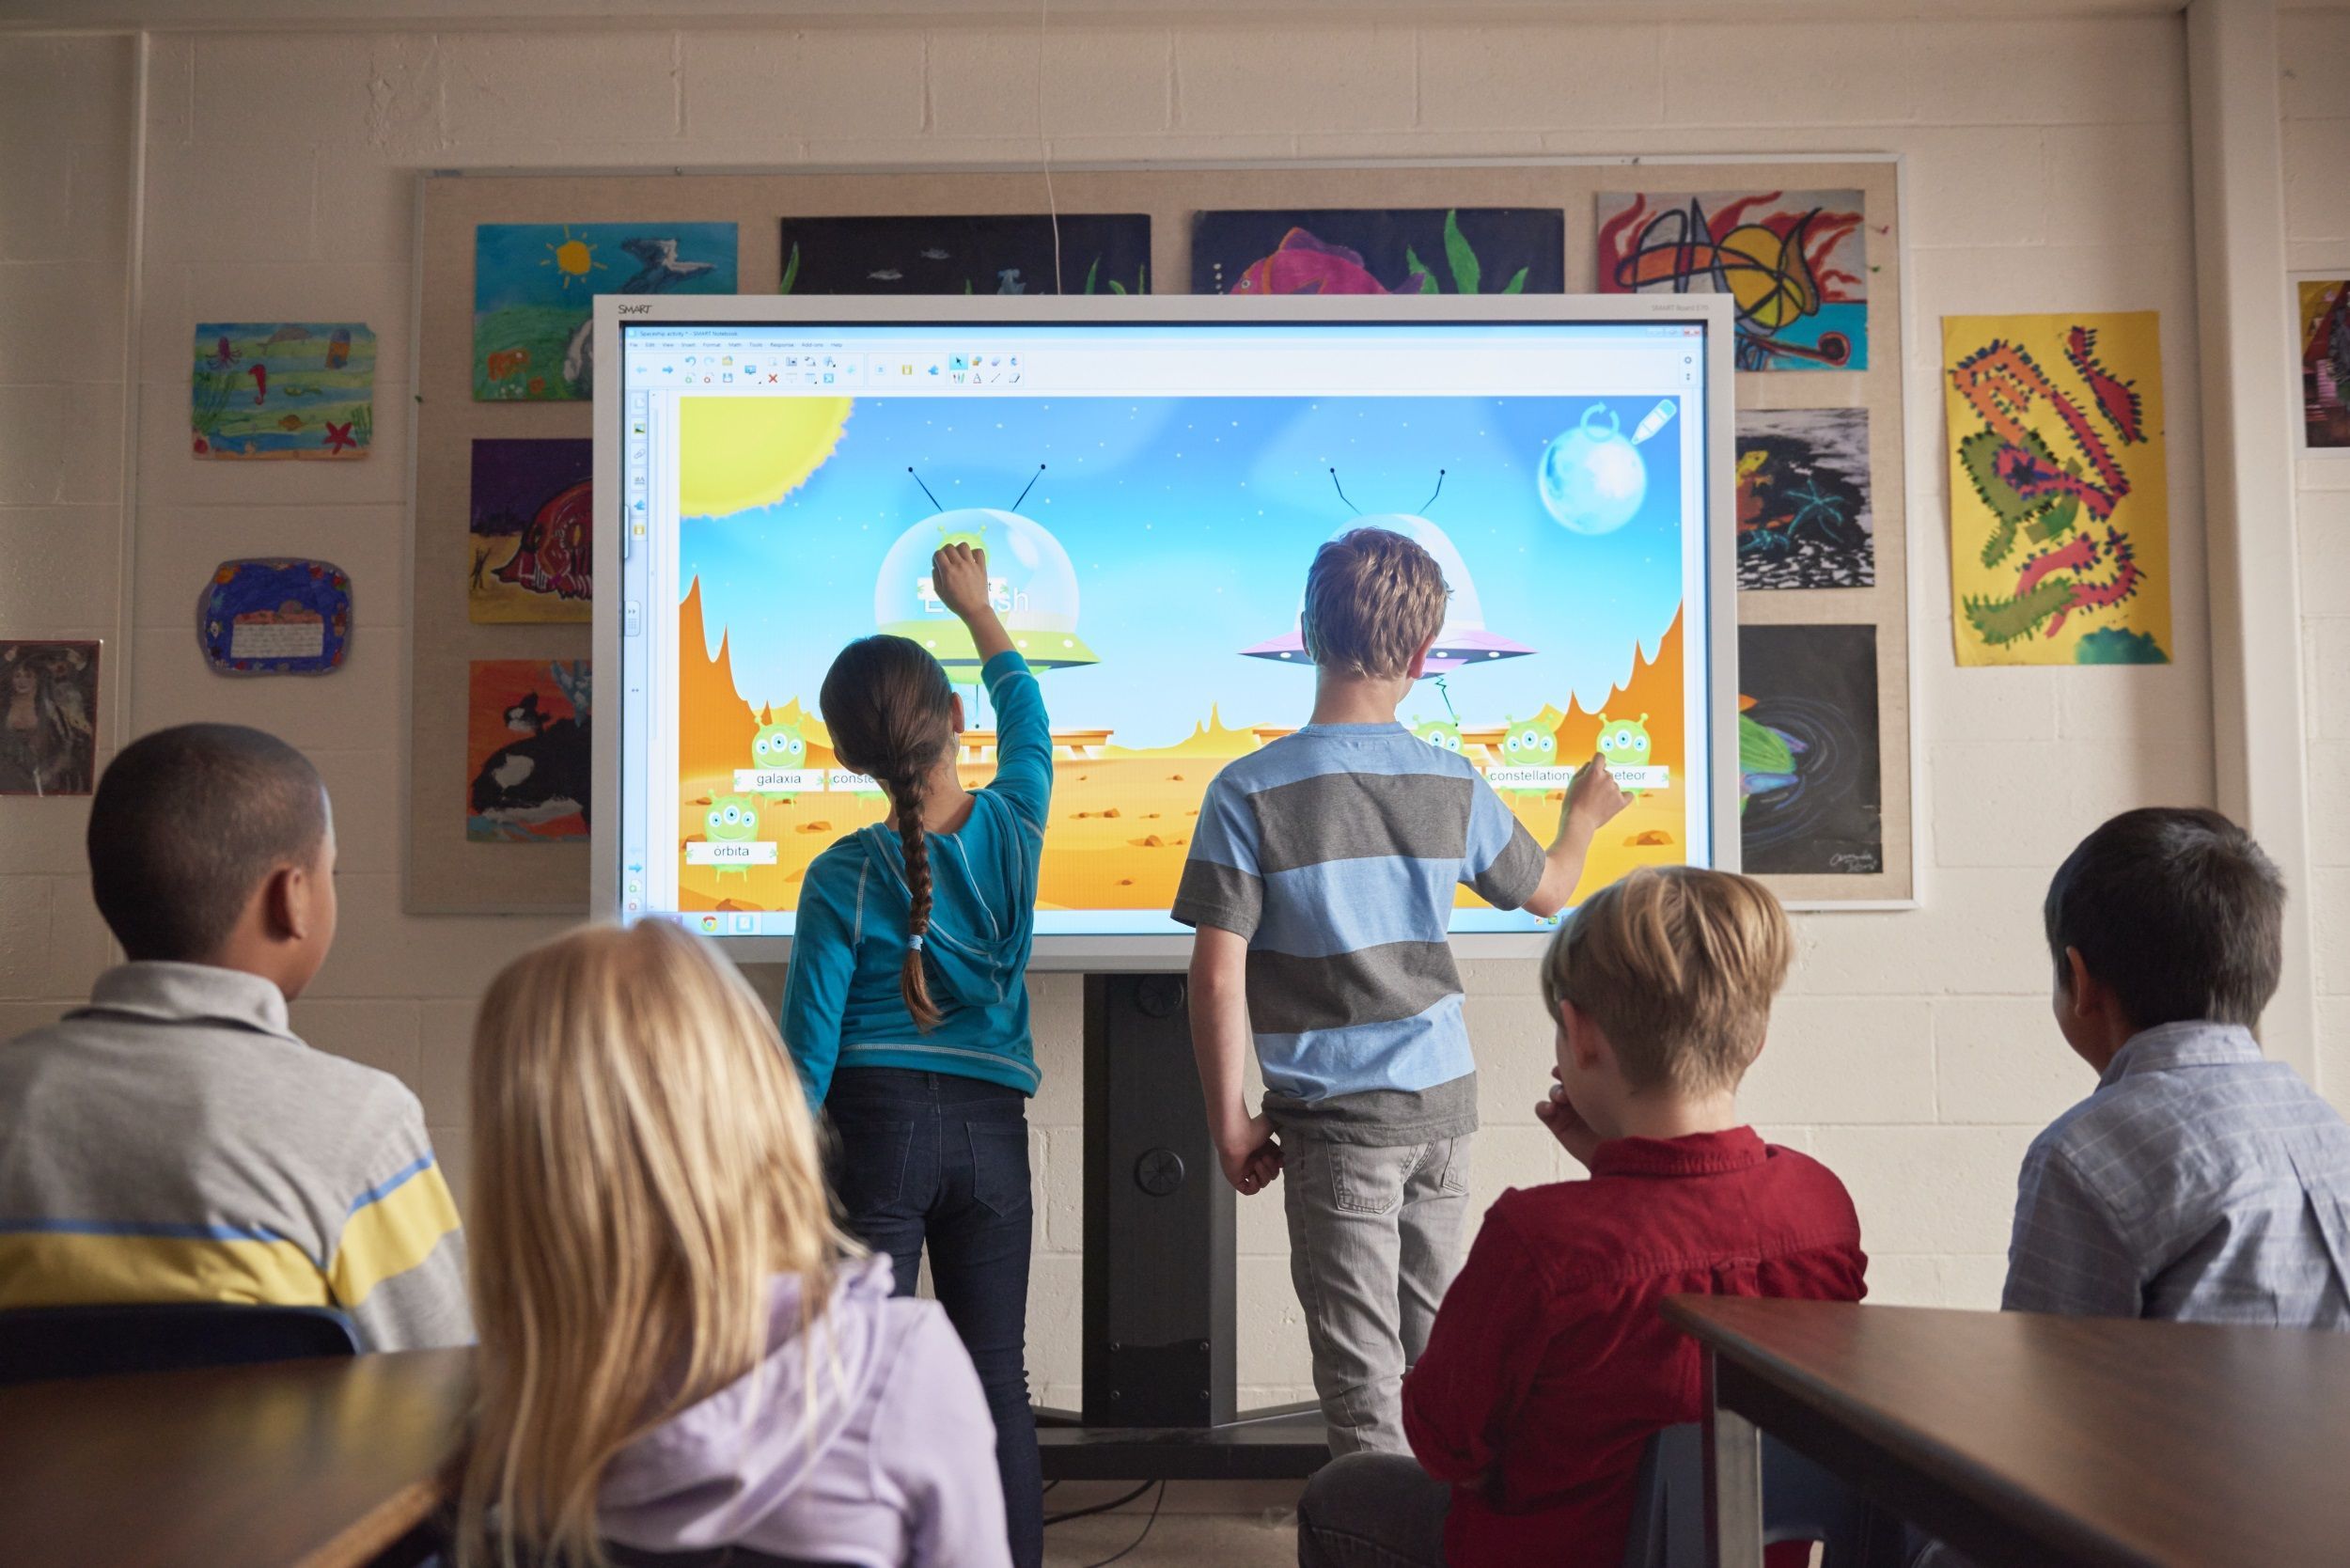 2 Kinder stehen vor einer digitalen Tafel und malen, während hinter ihnen 4 weitere Kinder sitzen und zuschauen.